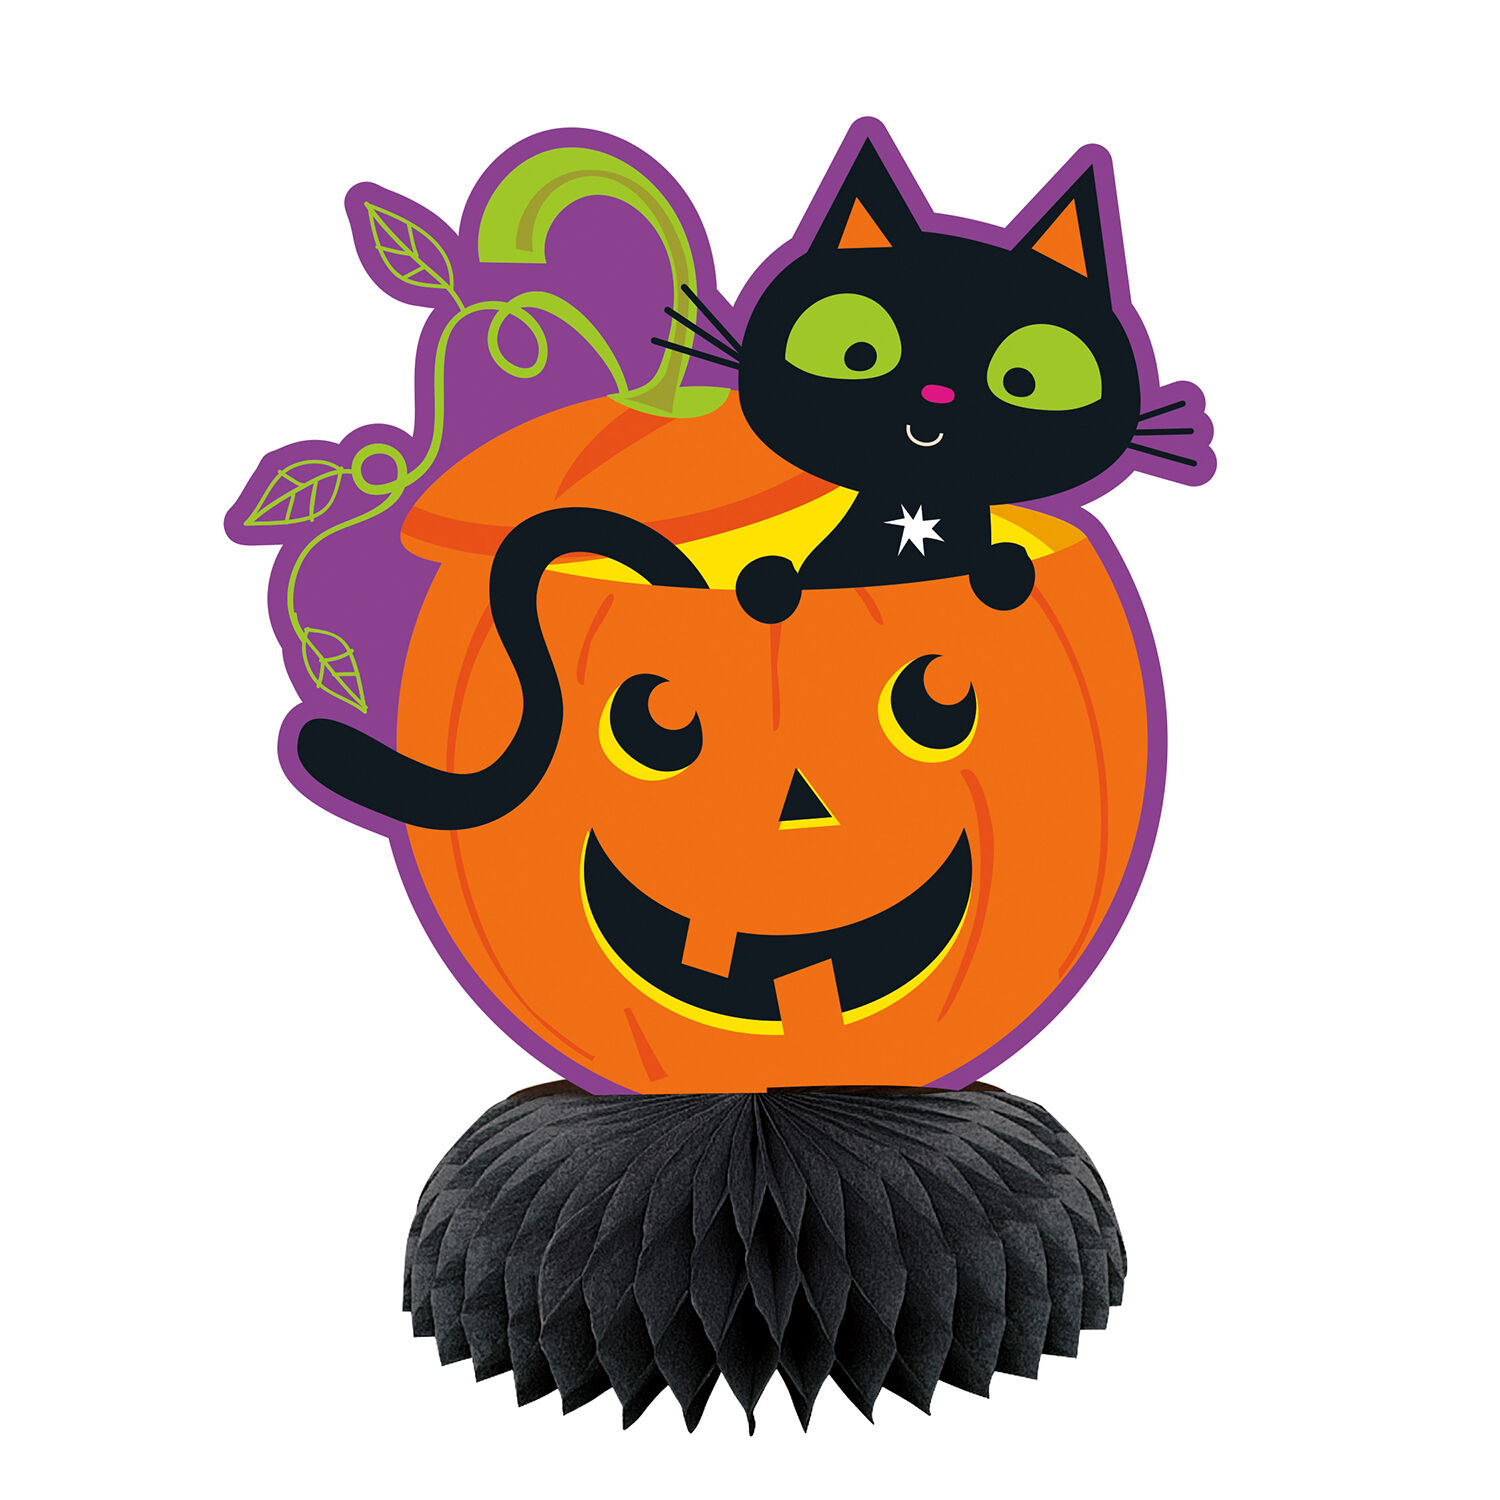 NEU Tischdeko Aufsteller Halloween Kürbis&Katze, je 15cm, 3 Stück